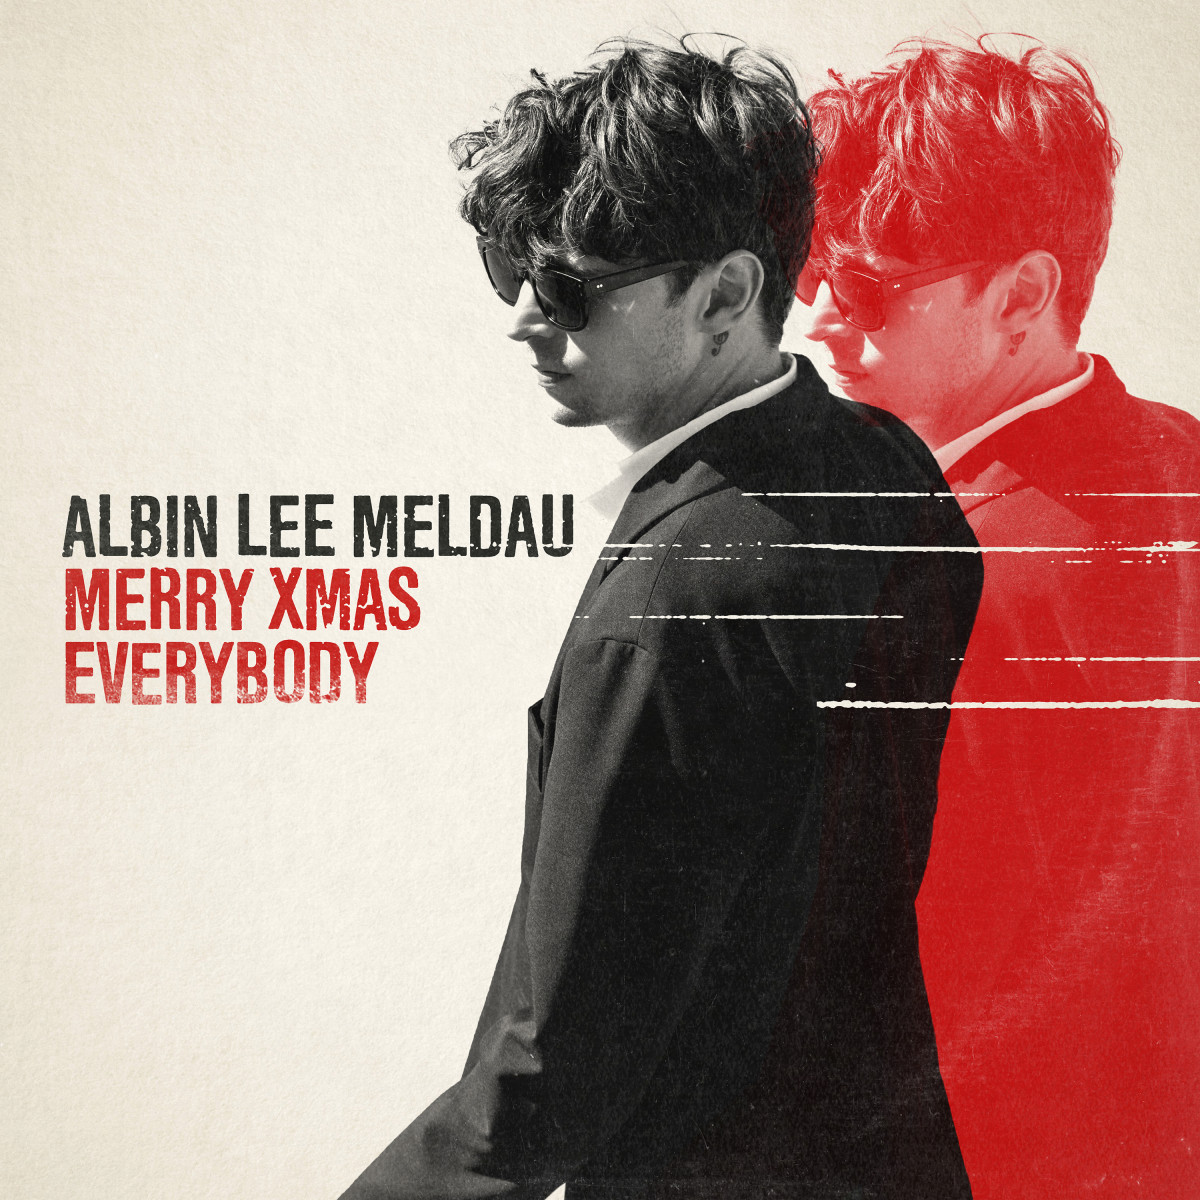 Albin Lee Meldau - Merry Xmas everybody